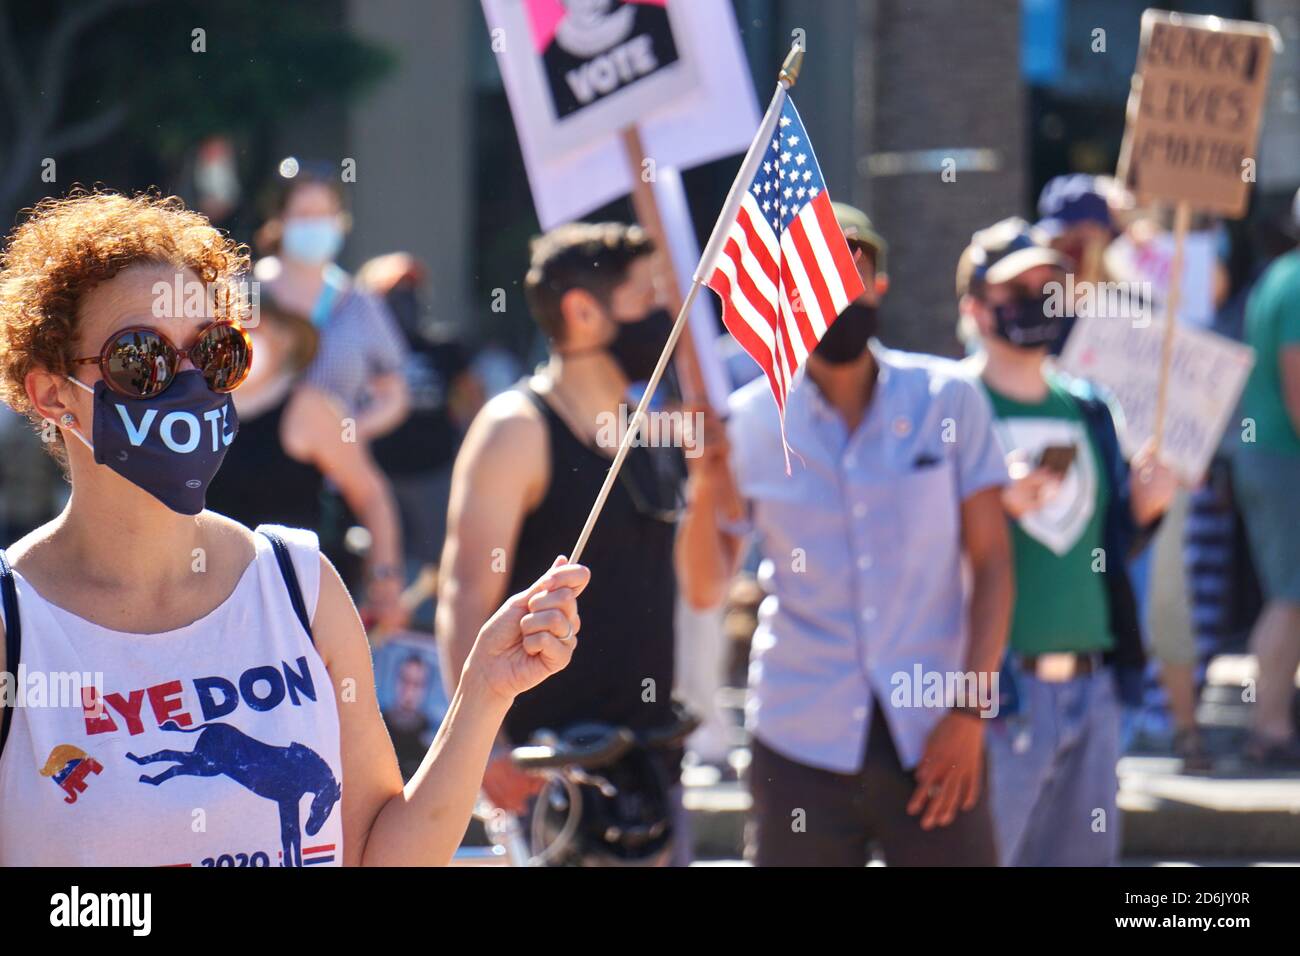 17 octobre 2020. Marche des femmes de San Francisco. L'électeur de Biden porte un masque de vote, un t-shirt Bye Don, et détient un drapeau américain peu avant l'élection des États-Unis. Banque D'Images